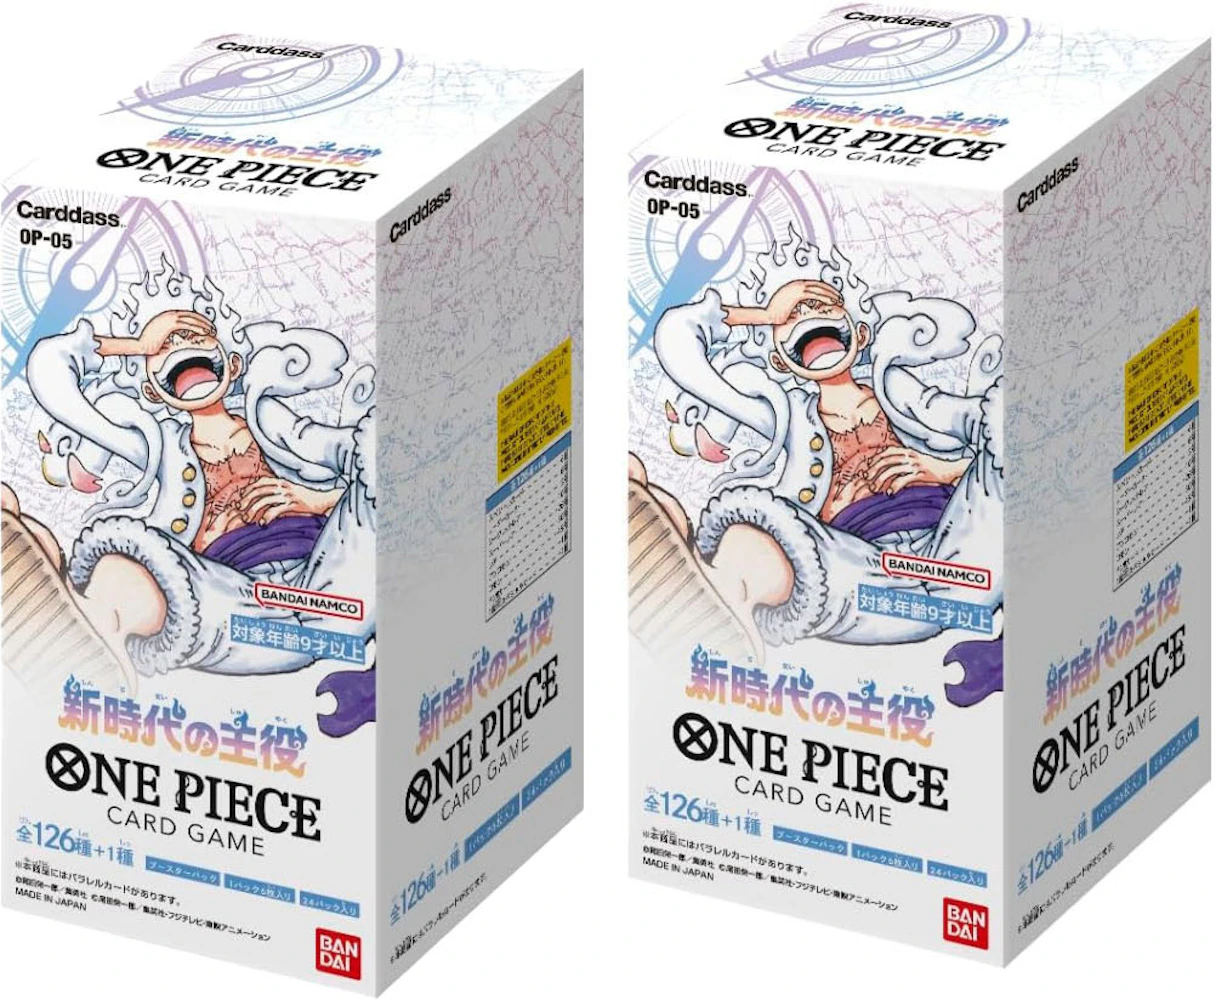 Bandai One Piece Card Game Awakening of New Era Booster Box (OP-05